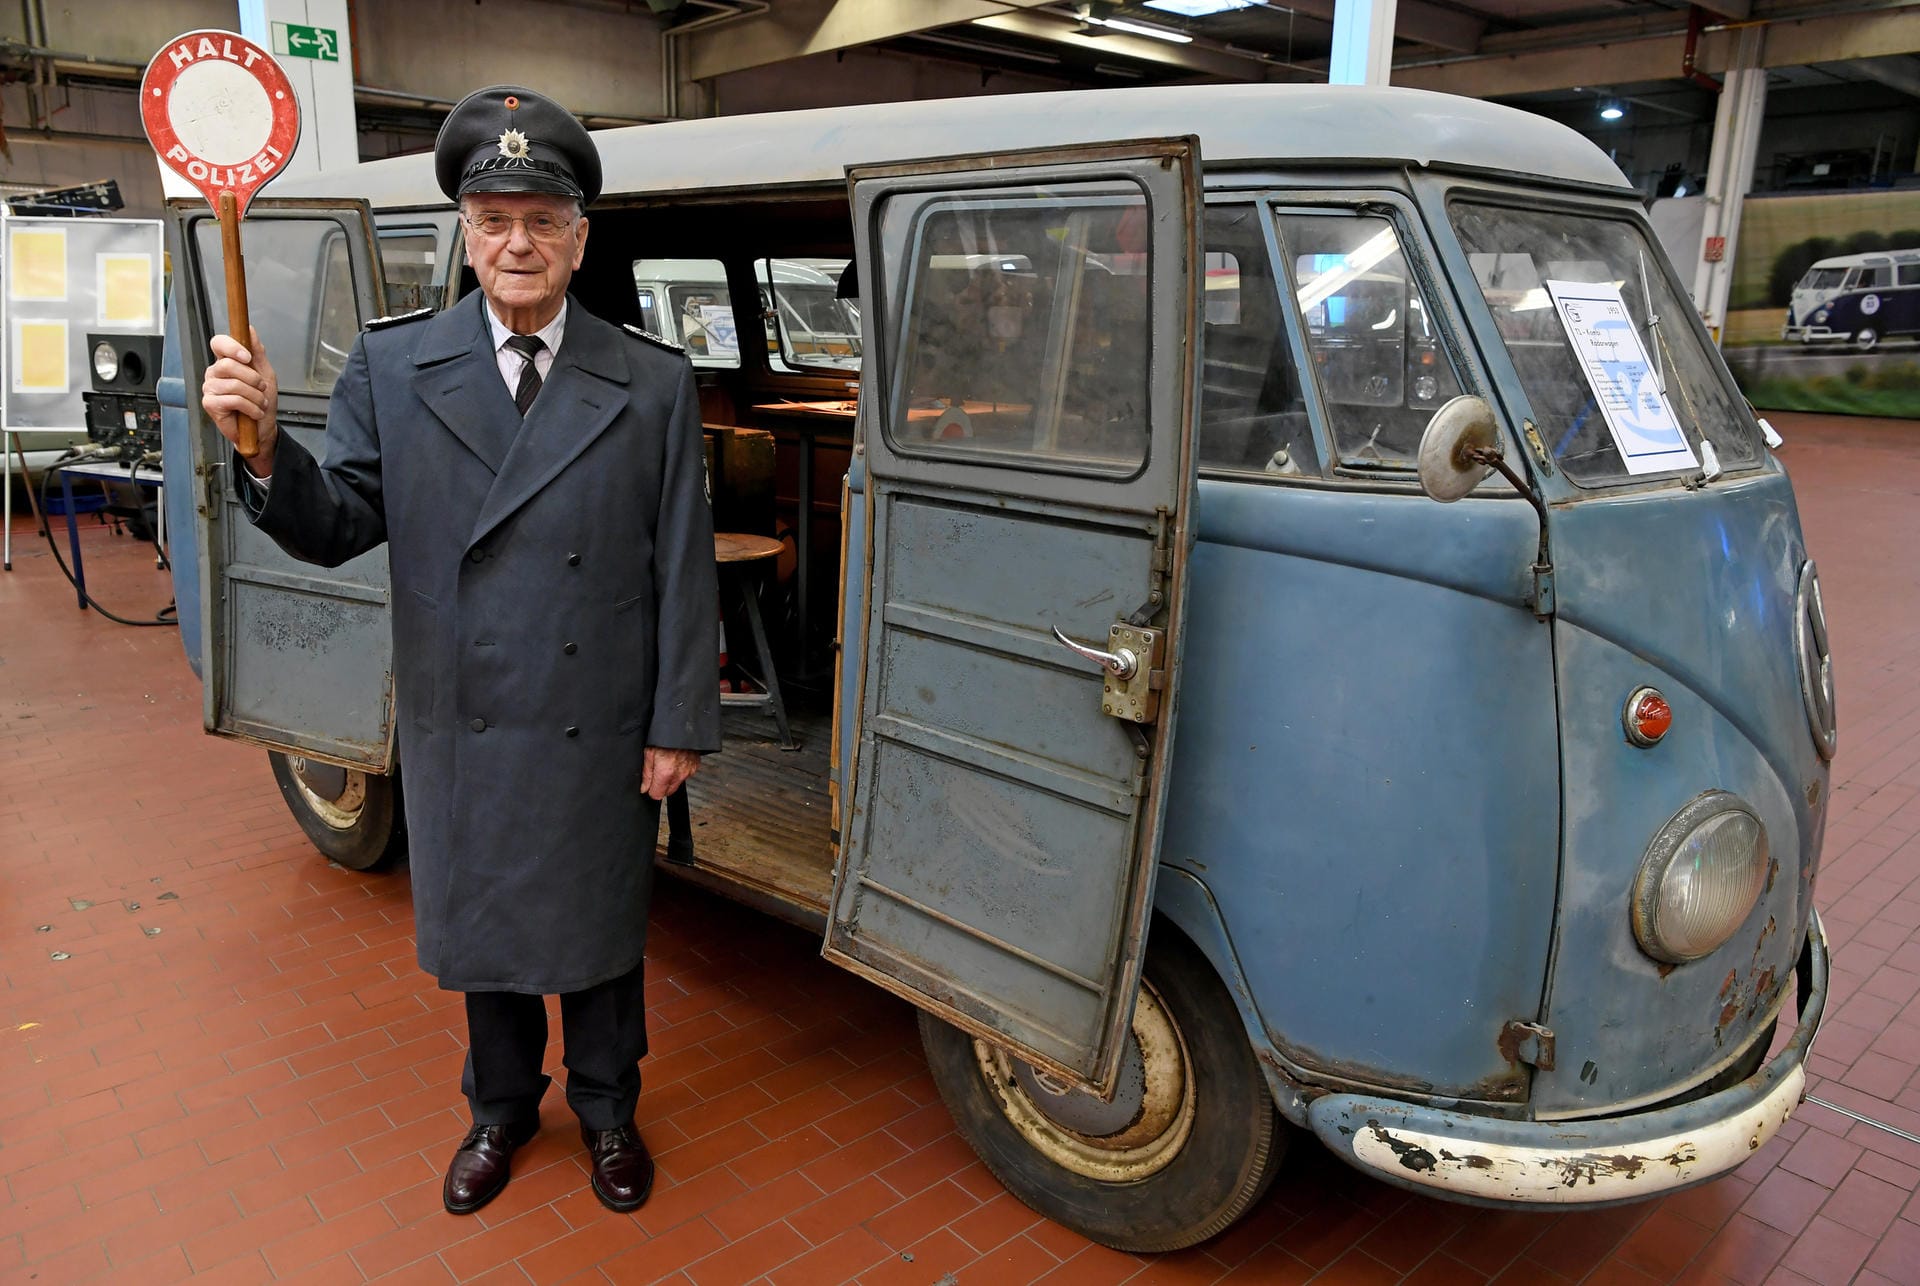 Historische Uniform, historisches Auto: Inzwischen ist der Bulli im Besitz des VW-Konzerns.